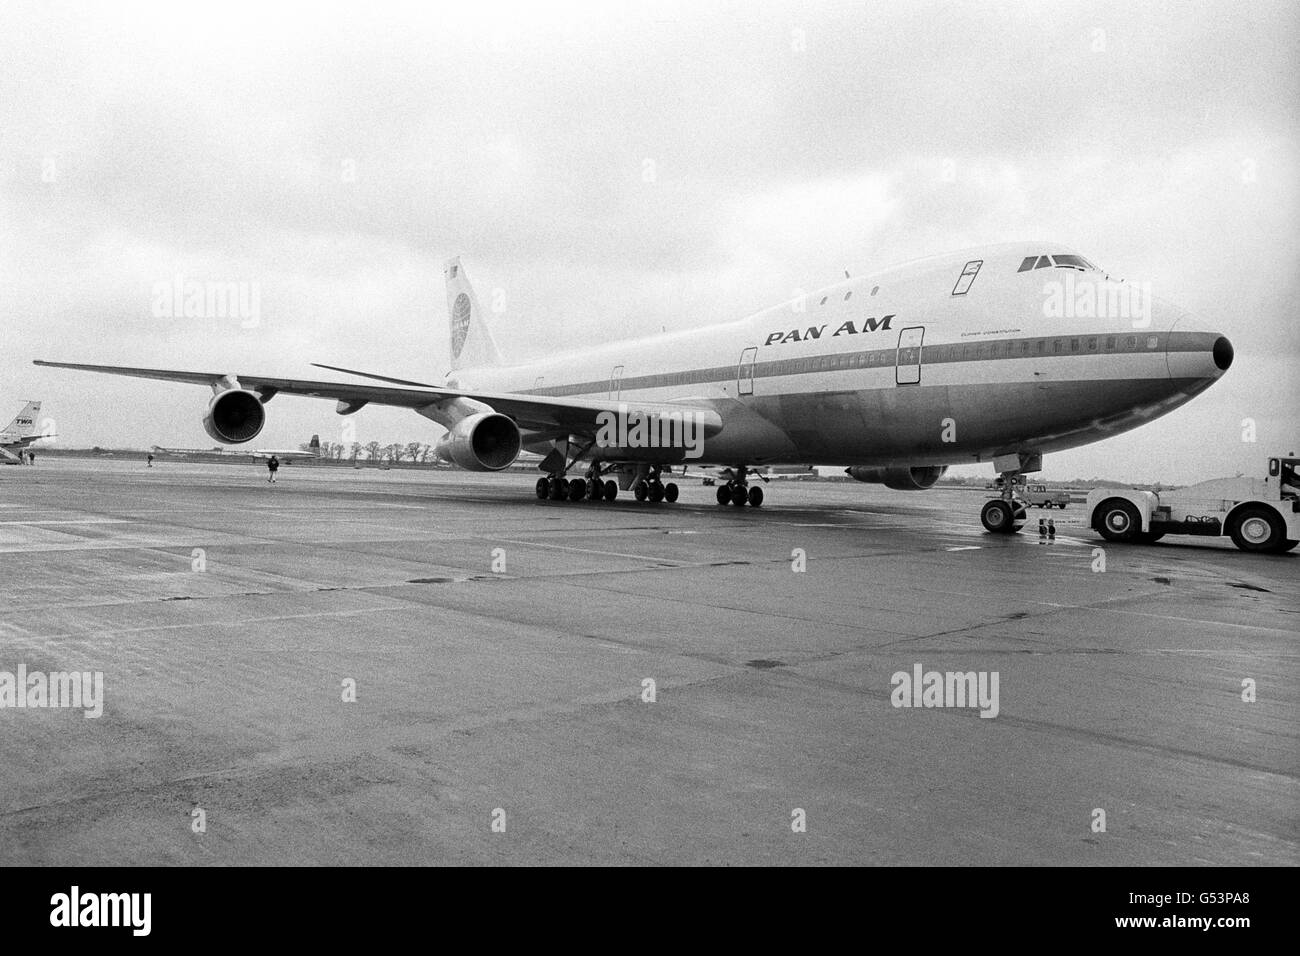 Pan American Airways, nuovo jet boeing 747 jumbo all'aeroporto di Heathrow. Foto Stock